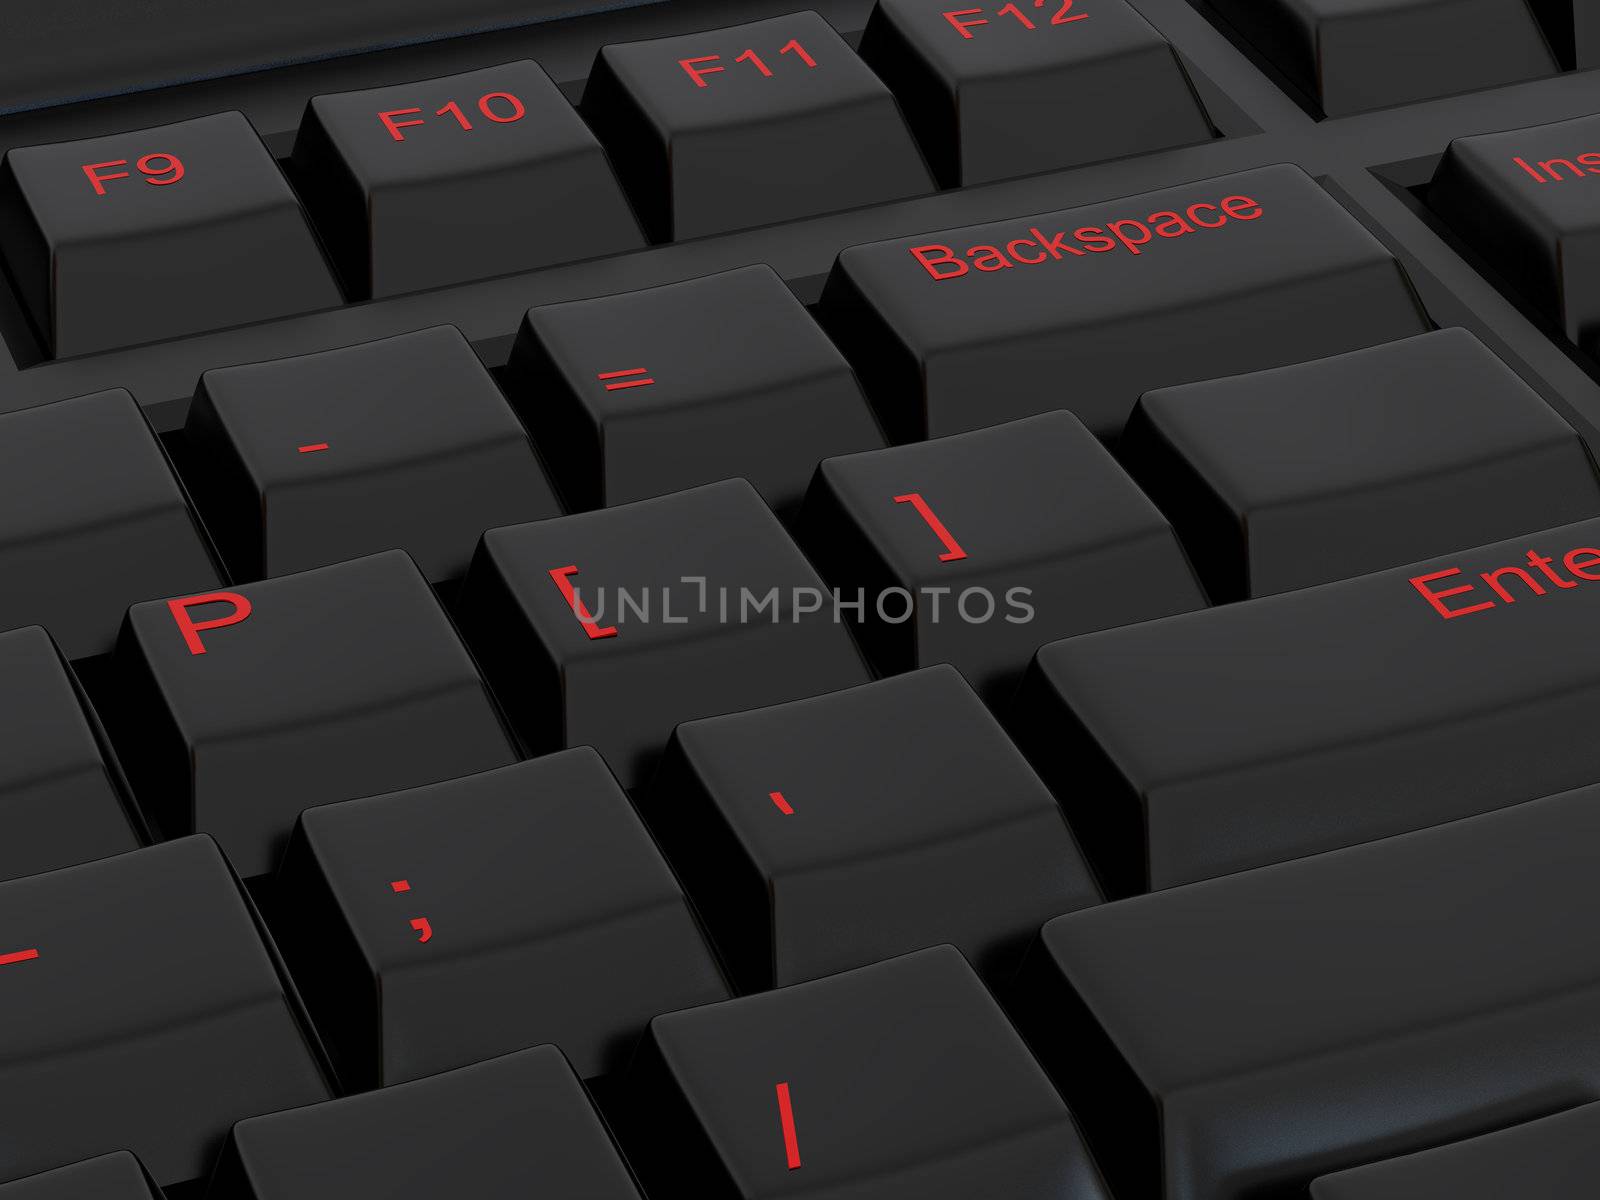 High resolution image black keyboard. 3d illustration over  white backgrounds.